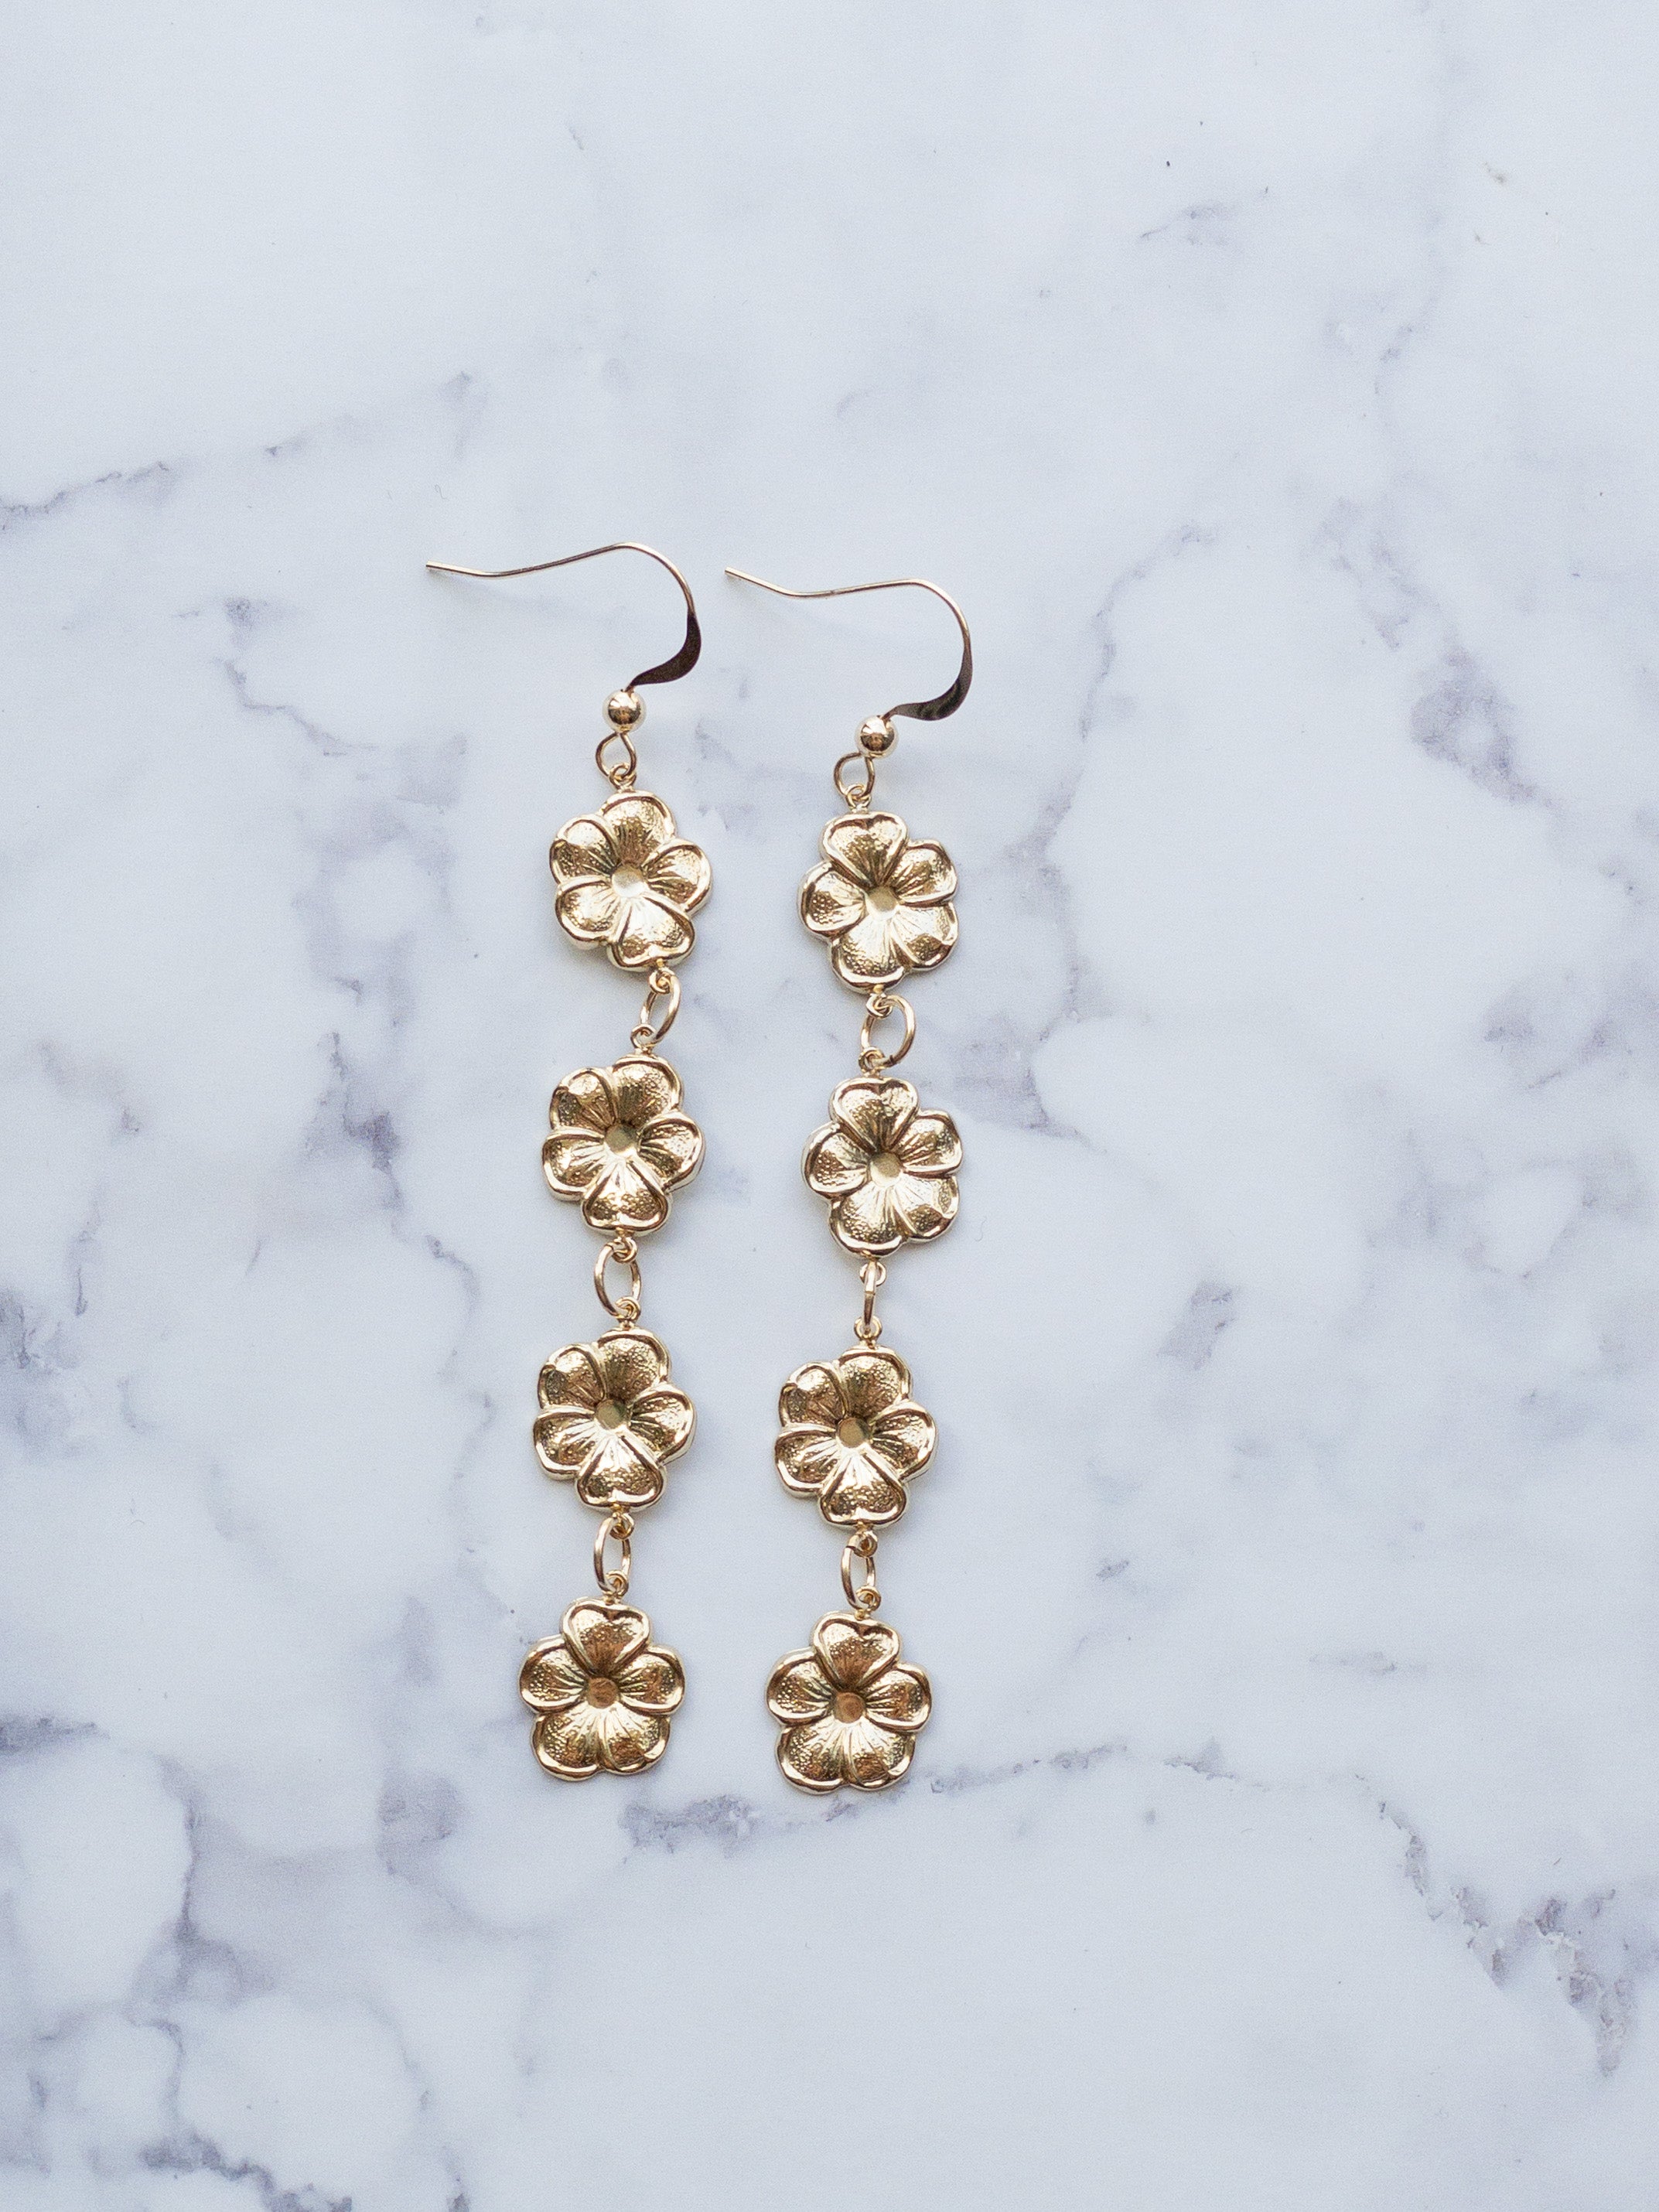 XL Gold Filled Flower Drop Earrings